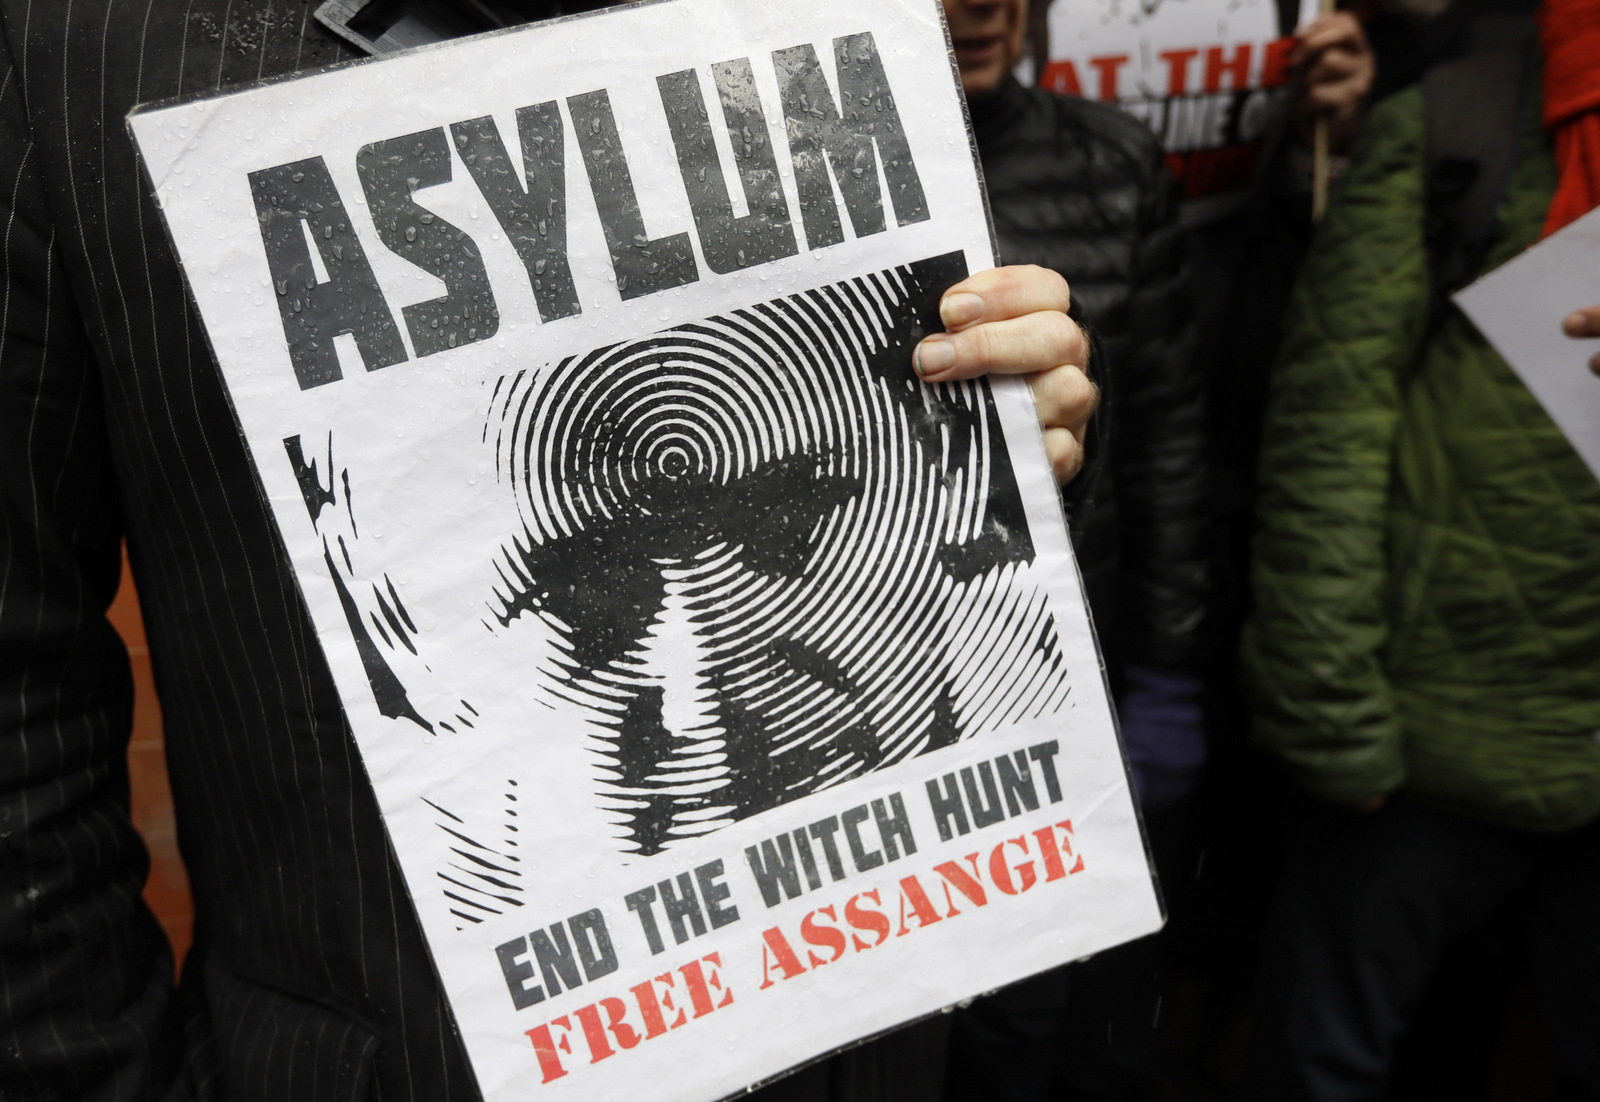 Сторонник Юлиана Ассанжа держит знамя во время протеста возле посольства Эквадора в Лондоне 29 марта 2018 года. Кирсти Вигглсворт | AP